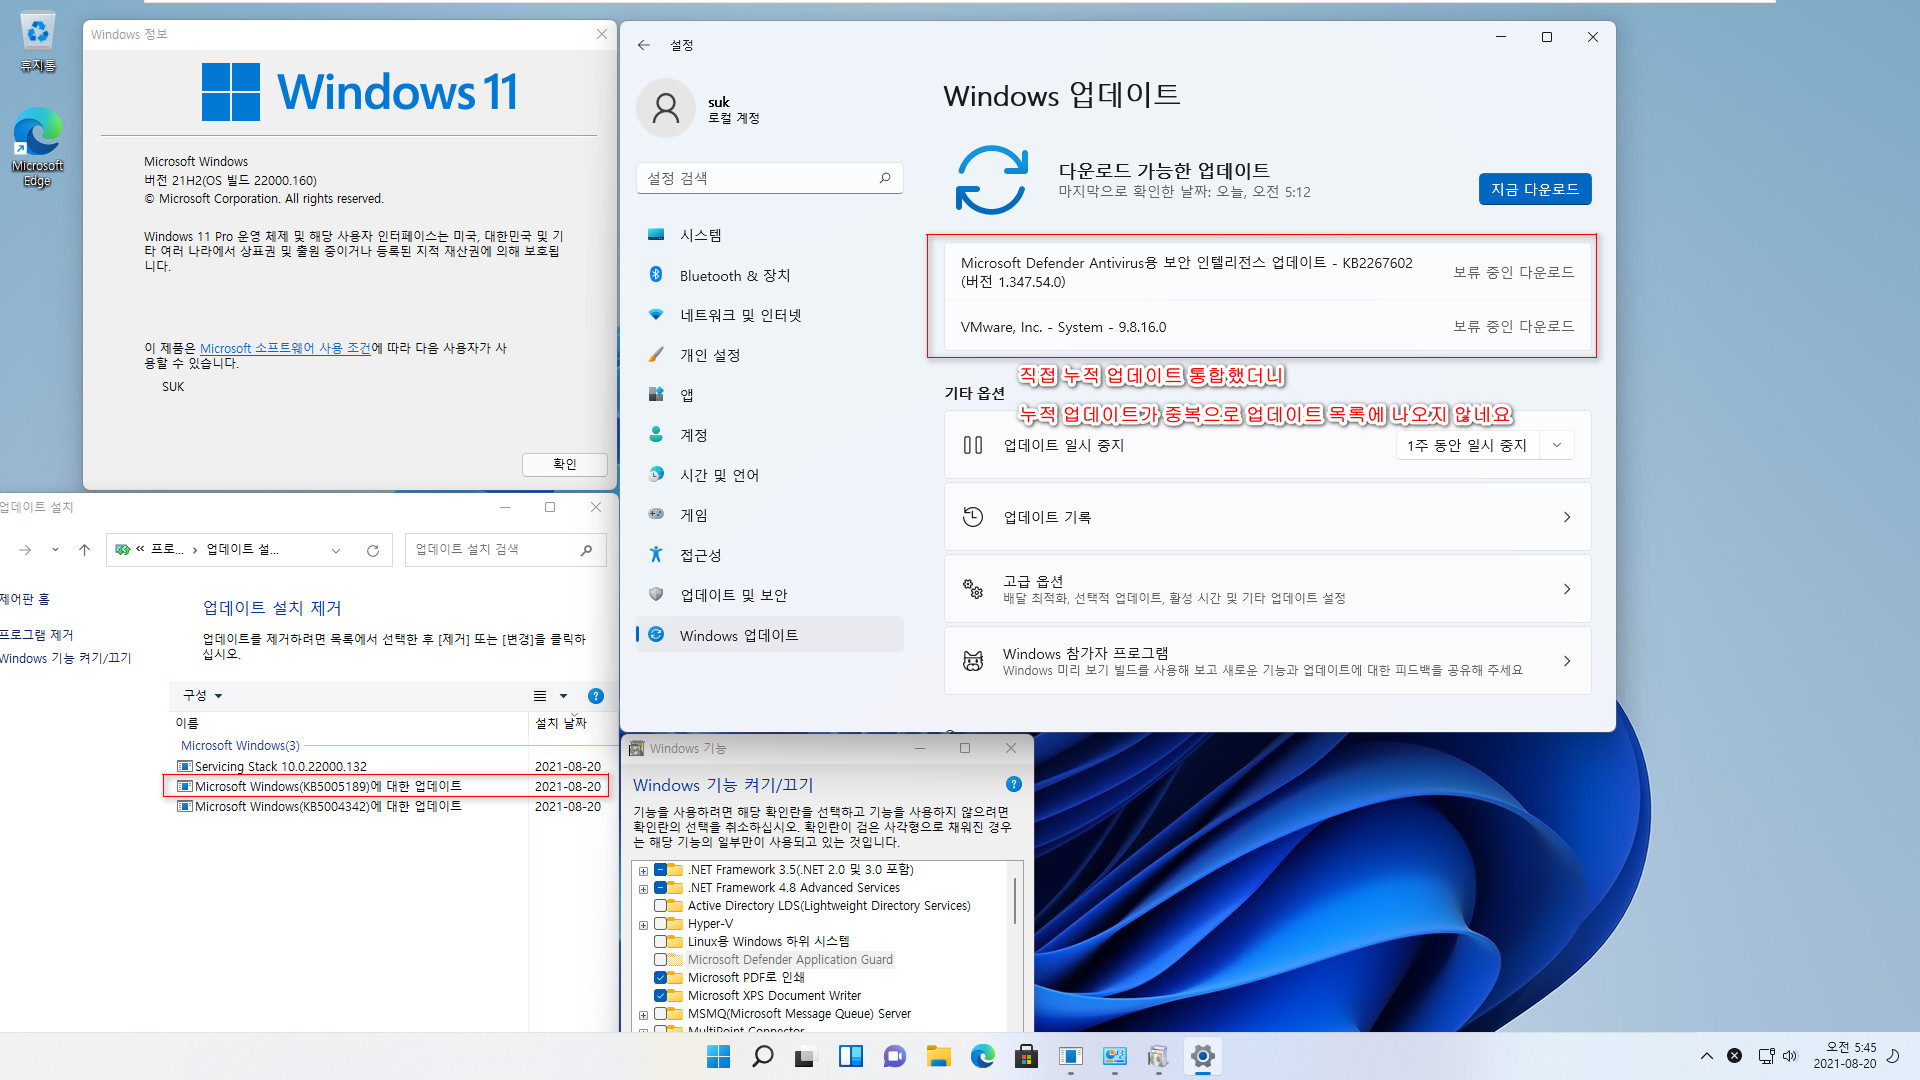 Windows 11 인사이더 프리뷰 - 버전 21H2 (OS 빌드 22000.160) 나왔네요 - 개발자 채널 + 베타 채널 - 설치 테스트 - 직접 누적 업데이트 통합했더니, 누적 업데이트가 중복으로 업데이트 목록에 나오지 않네요 2021-08-20_054527.jpg